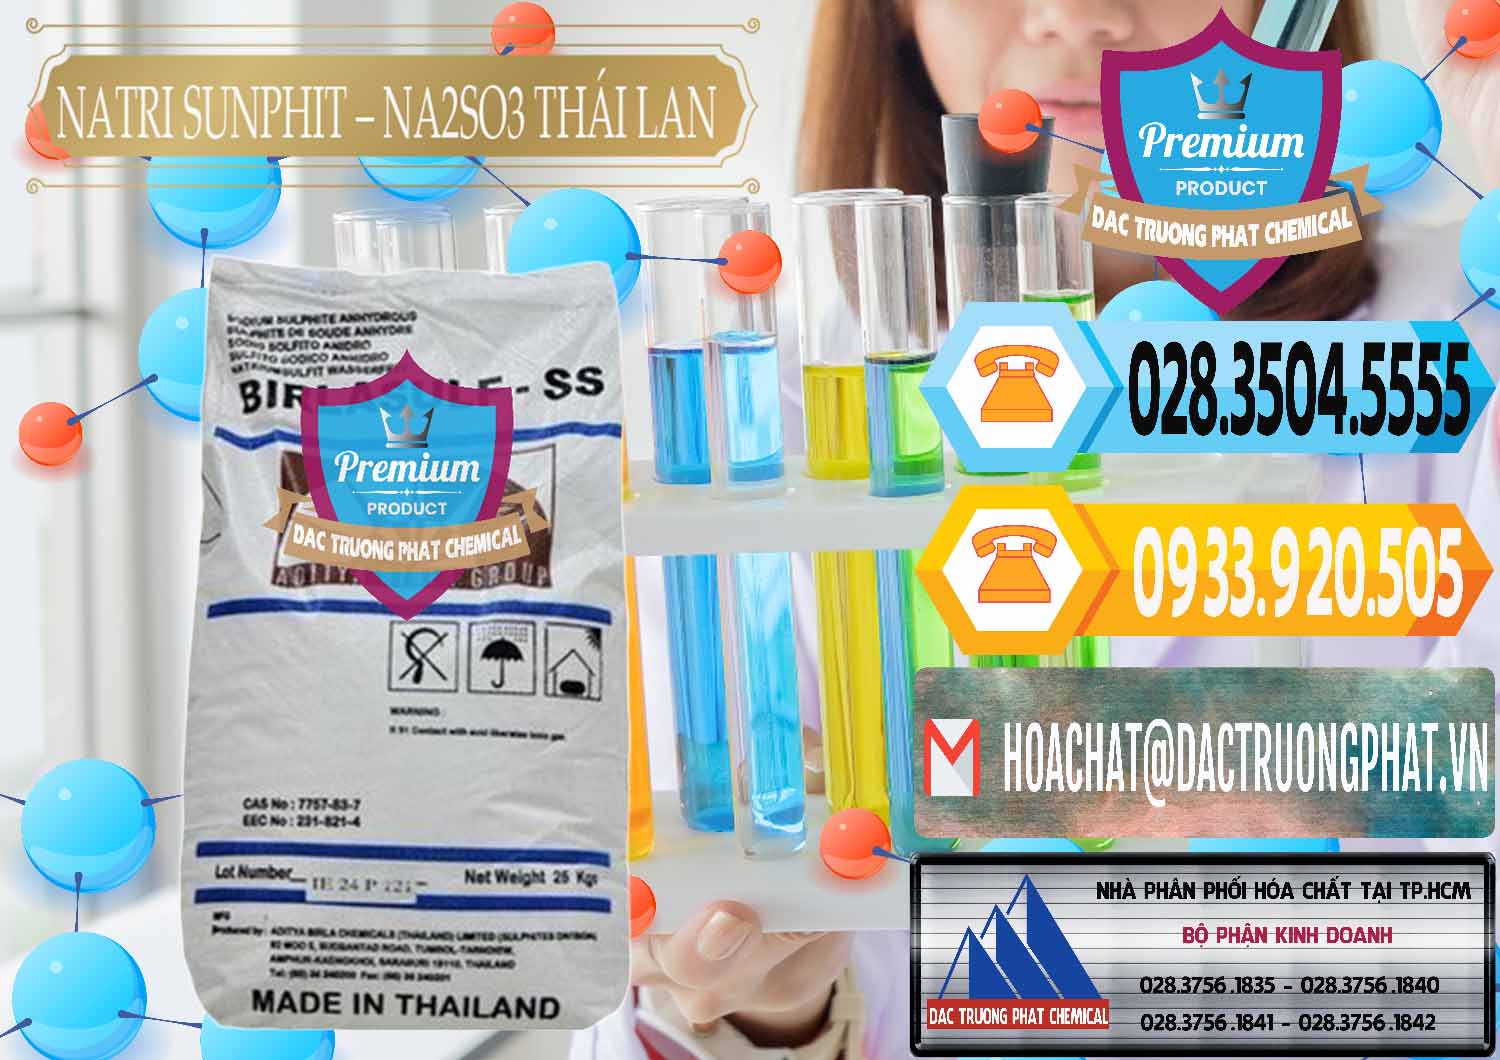 Đơn vị chuyên bán ( cung ứng ) Natri Sunphit - NA2SO3 Thái Lan - 0105 - Nơi phân phối - bán hóa chất tại TP.HCM - hoachattayrua.net